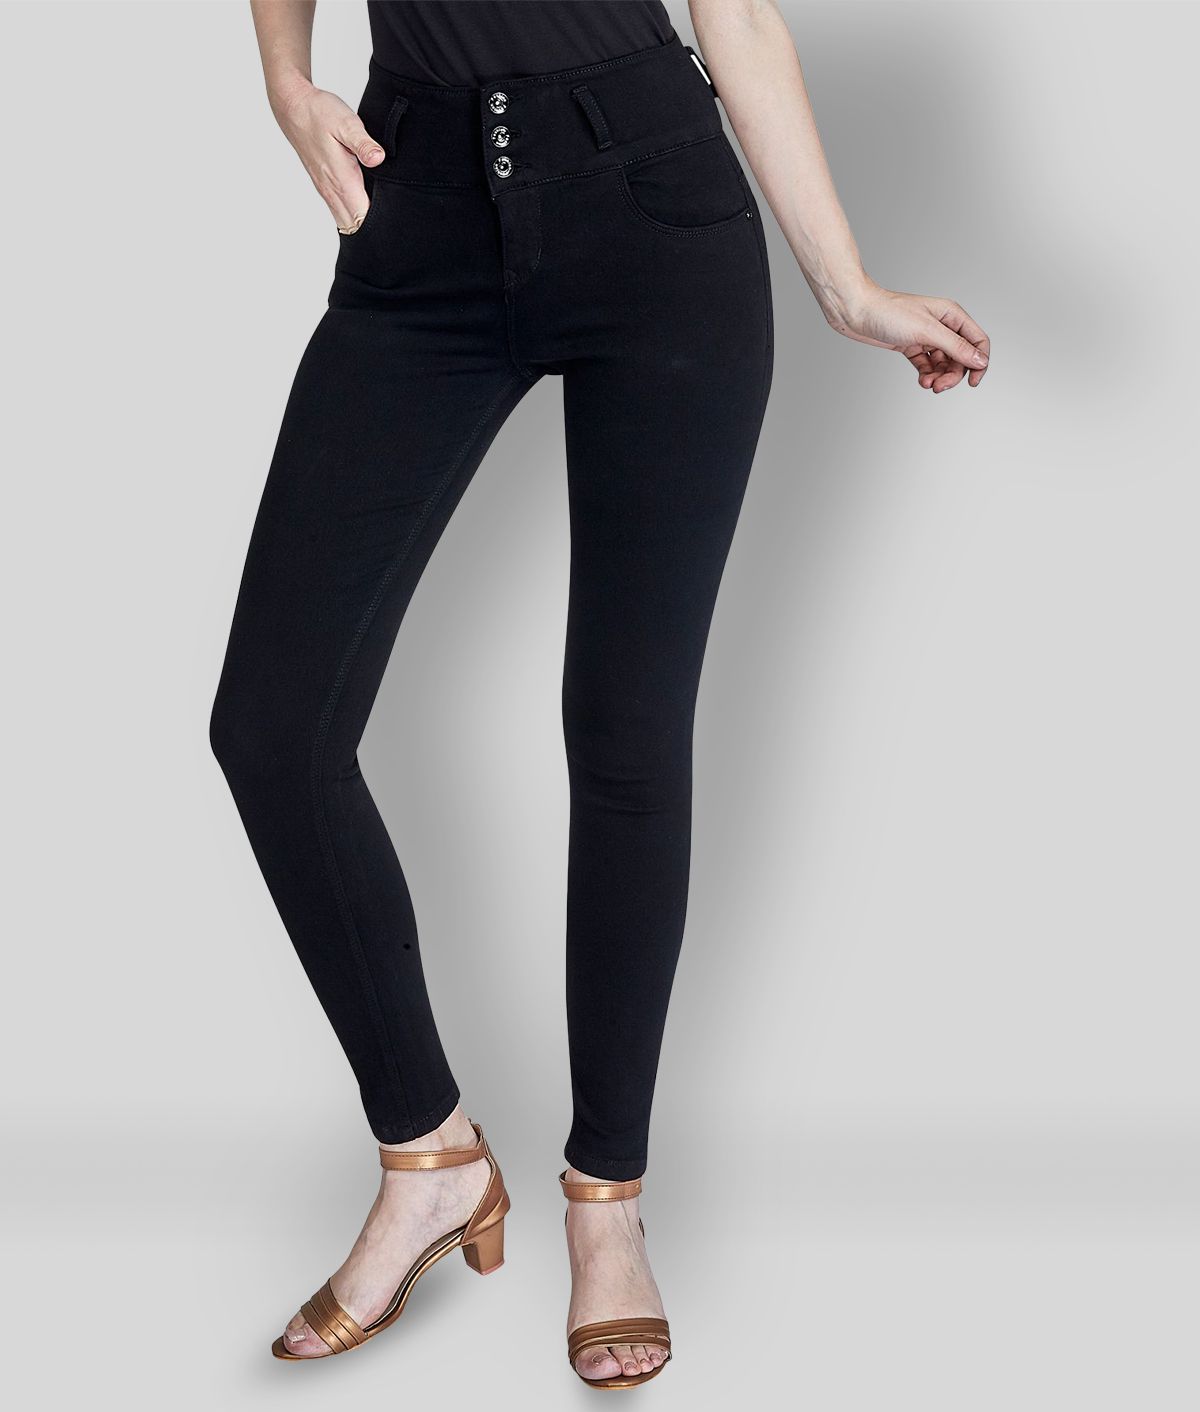 Rea-lize - Black Cotton Blend Women's Jeans ( Pack of 1 )